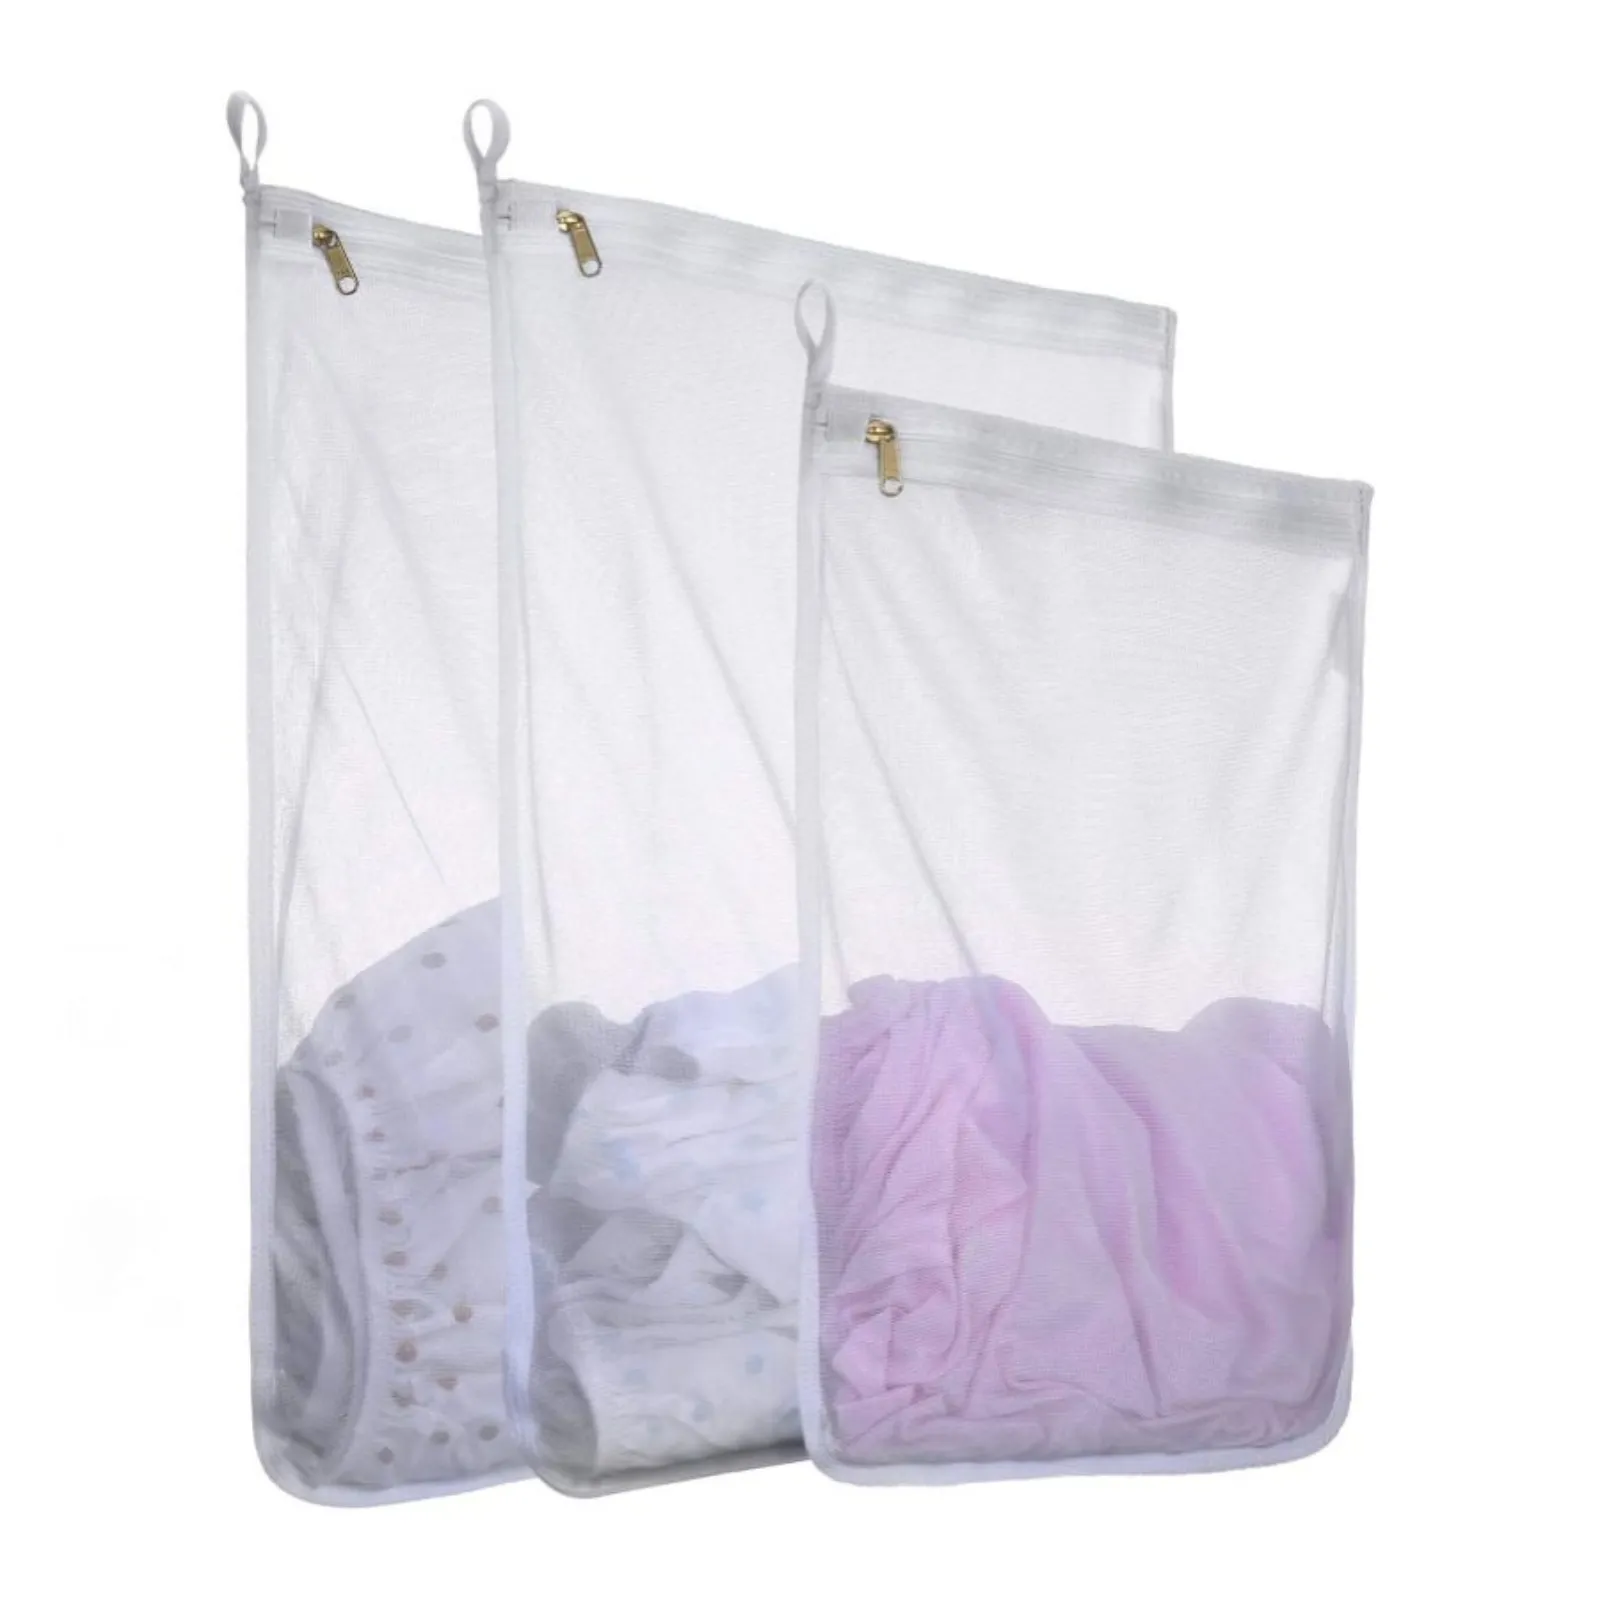 Ensemble de 3 sacs à linge en maille de bonne qualité, sac de rangement pour le lavage des vêtements